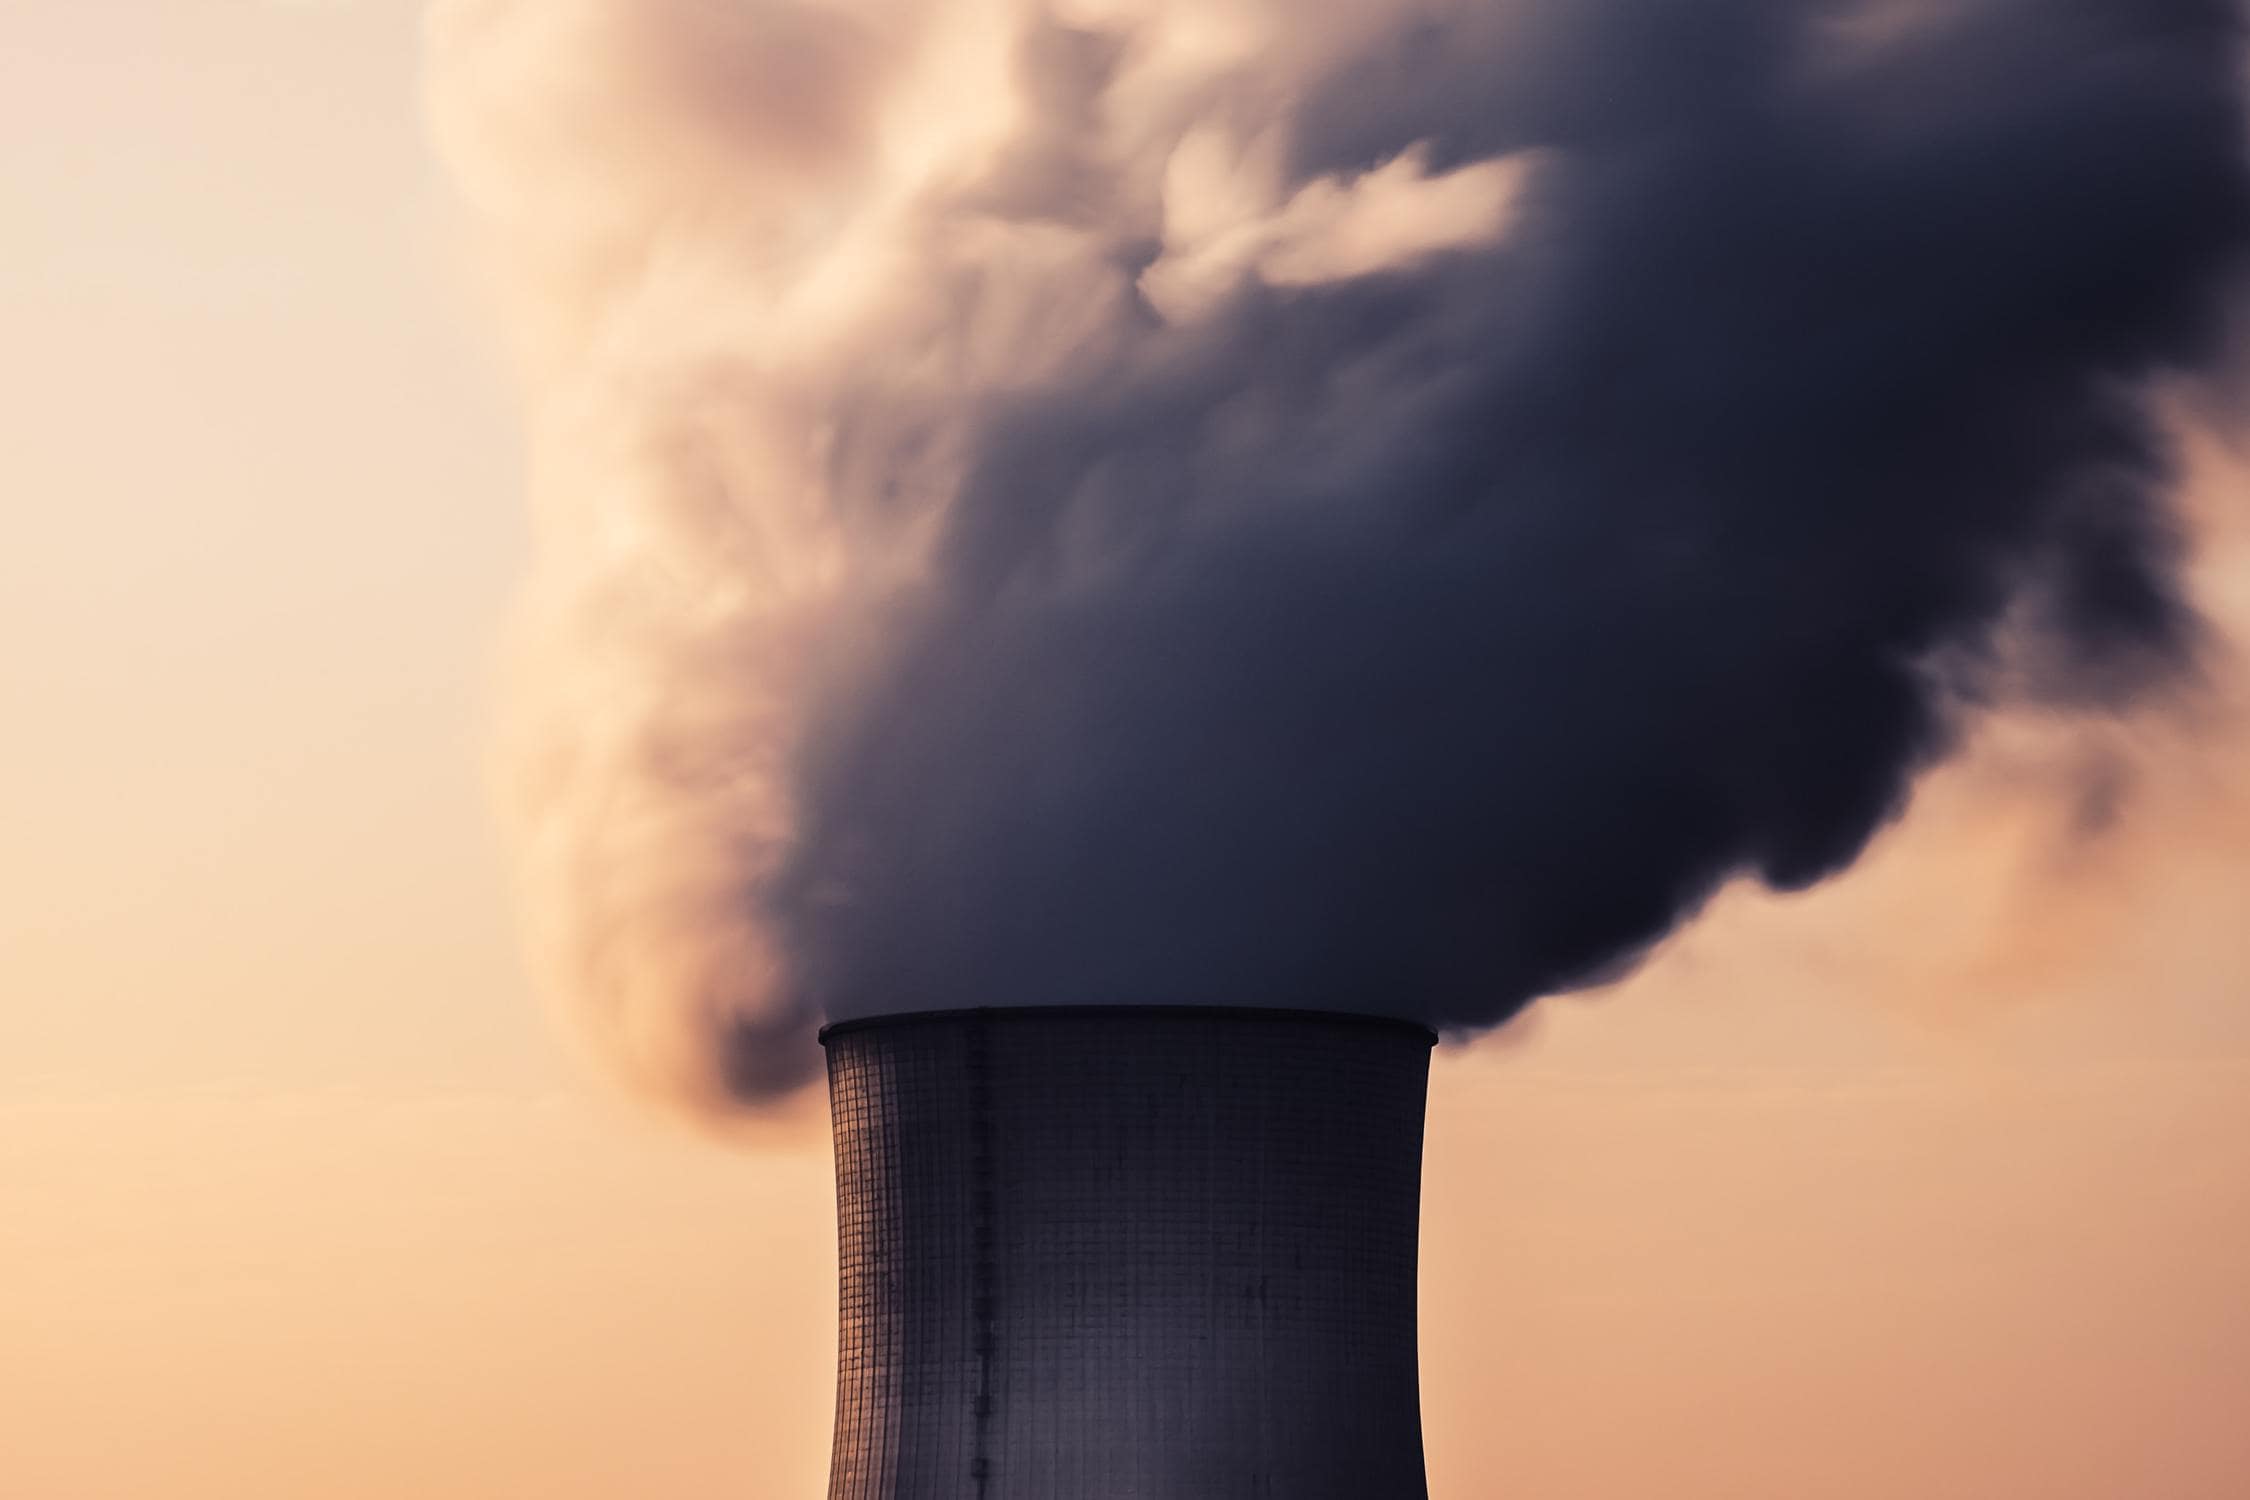 Atomkraftwerke sind in der Verwendung CO2-neutral.